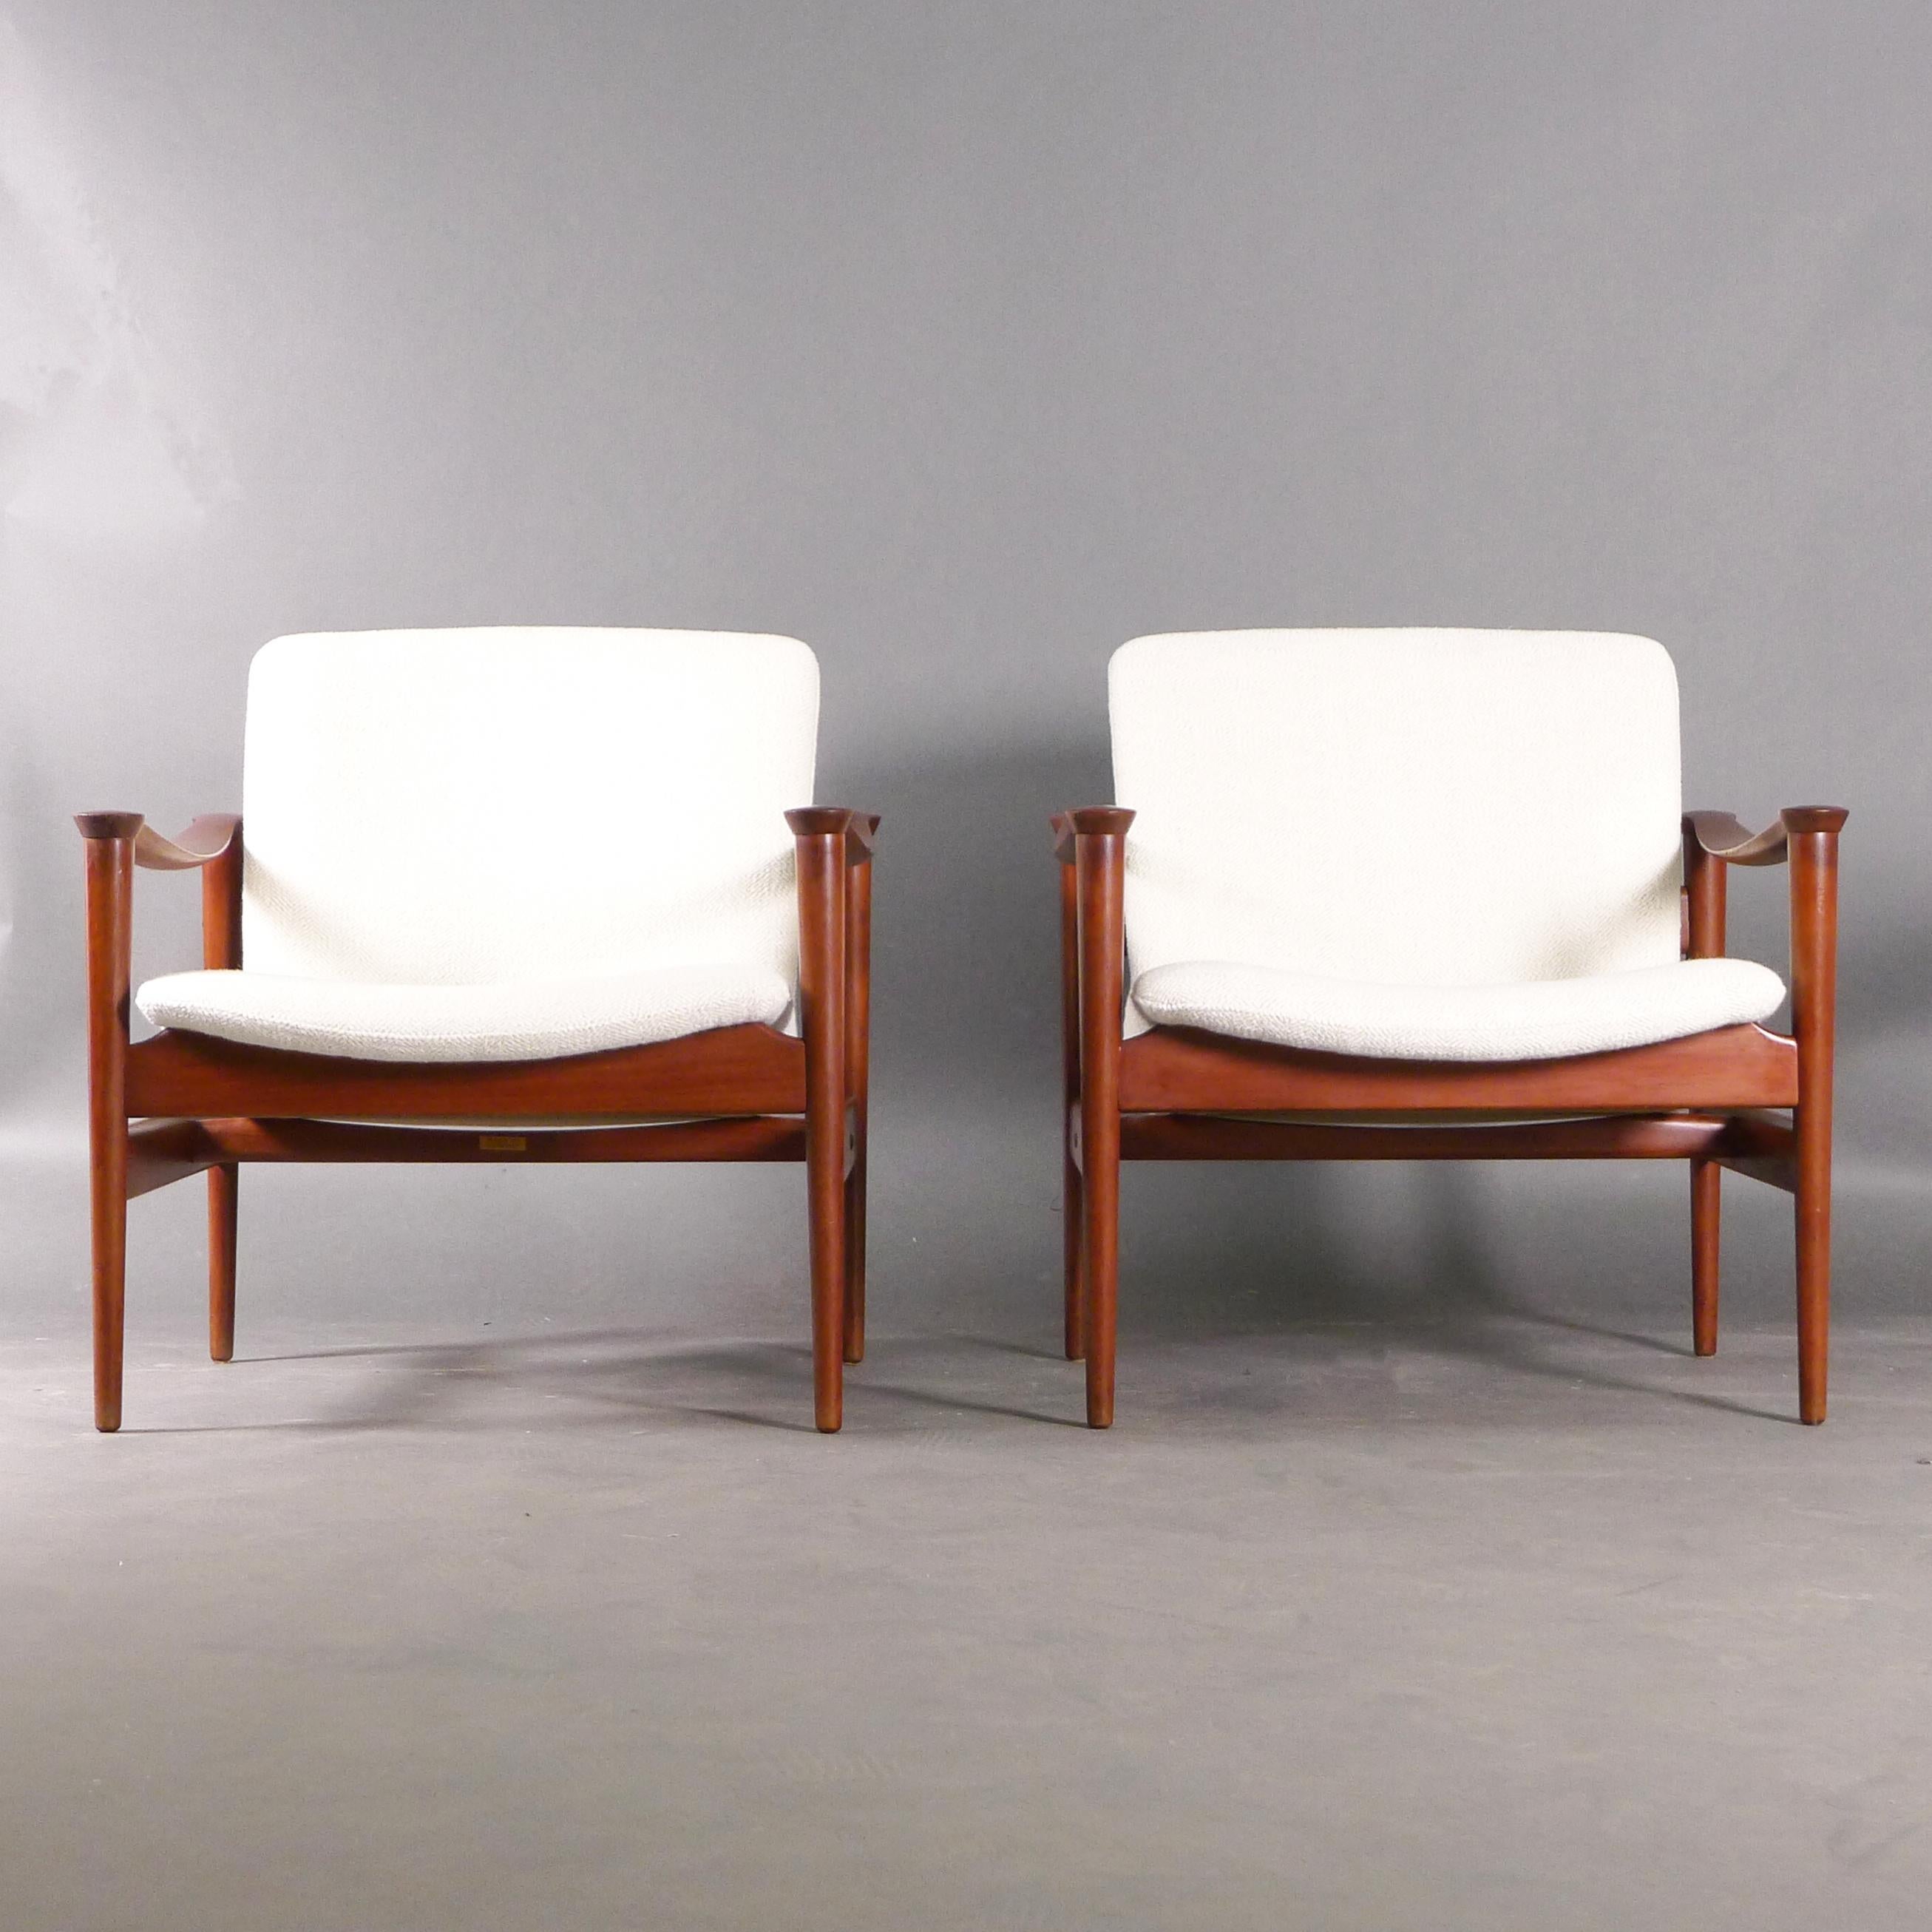 Schönes Paar norwegischer Sessel aus den 1960er Jahren, Modell 711, entworfen von Fredrik A. Kayser im Jahr 1960 und hergestellt von Vatne Lenestolfabrikk. Die Teakholzrahmen haben eine schöne Patina und weisen Rundungen an den geformten Armlehnen